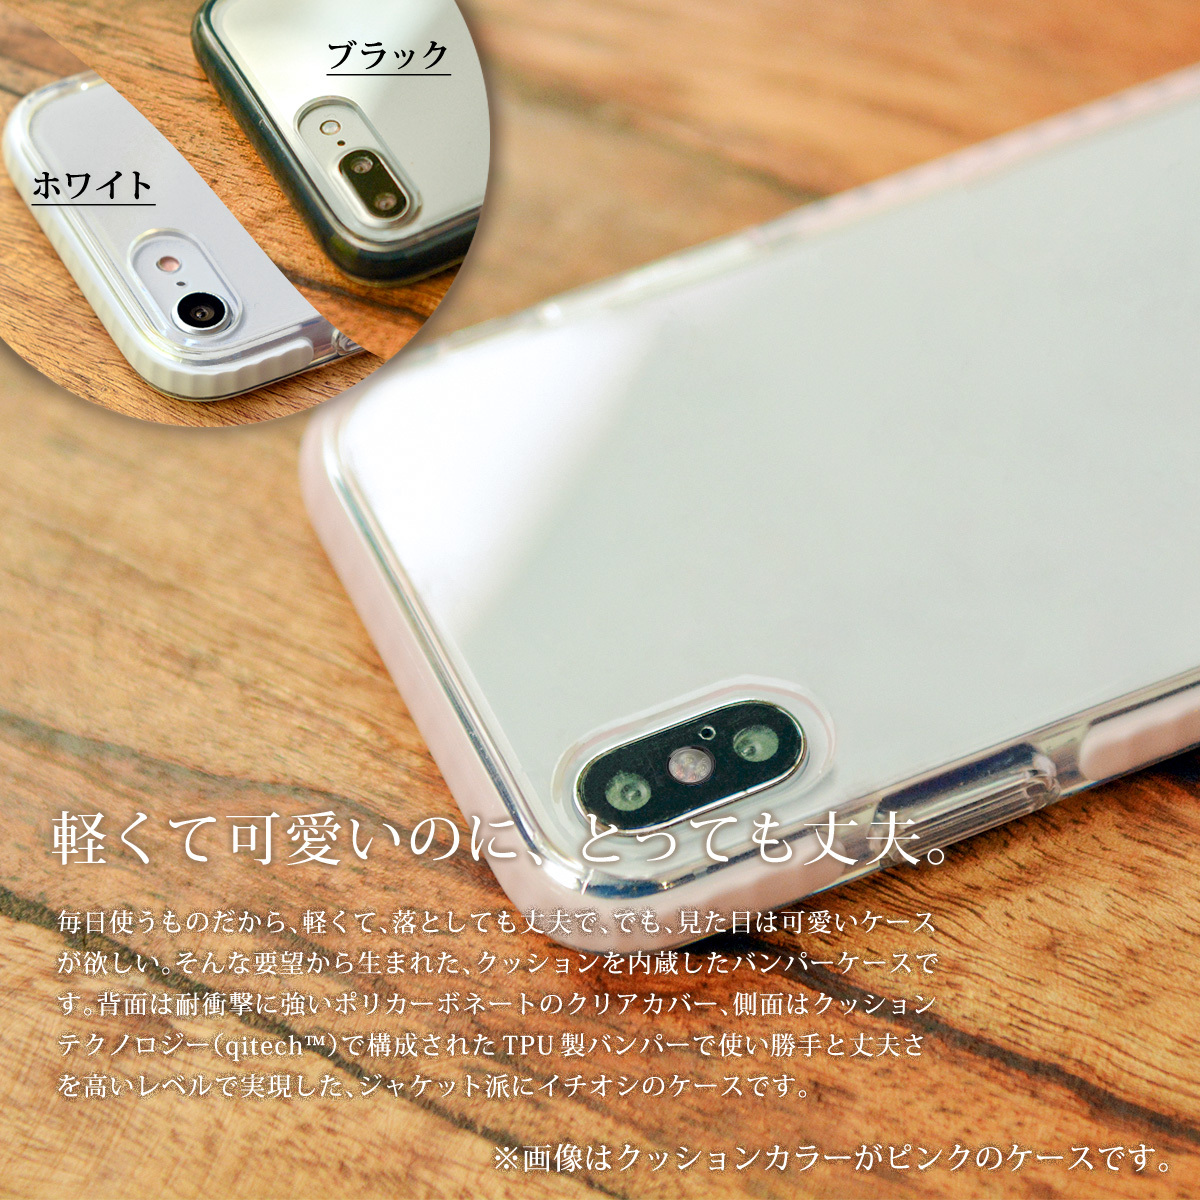 Iphone11 スマホカバー クリアケース パンと鳥 バンパー スマホケース Iphoneケース 携帯ケース ケースガーデン